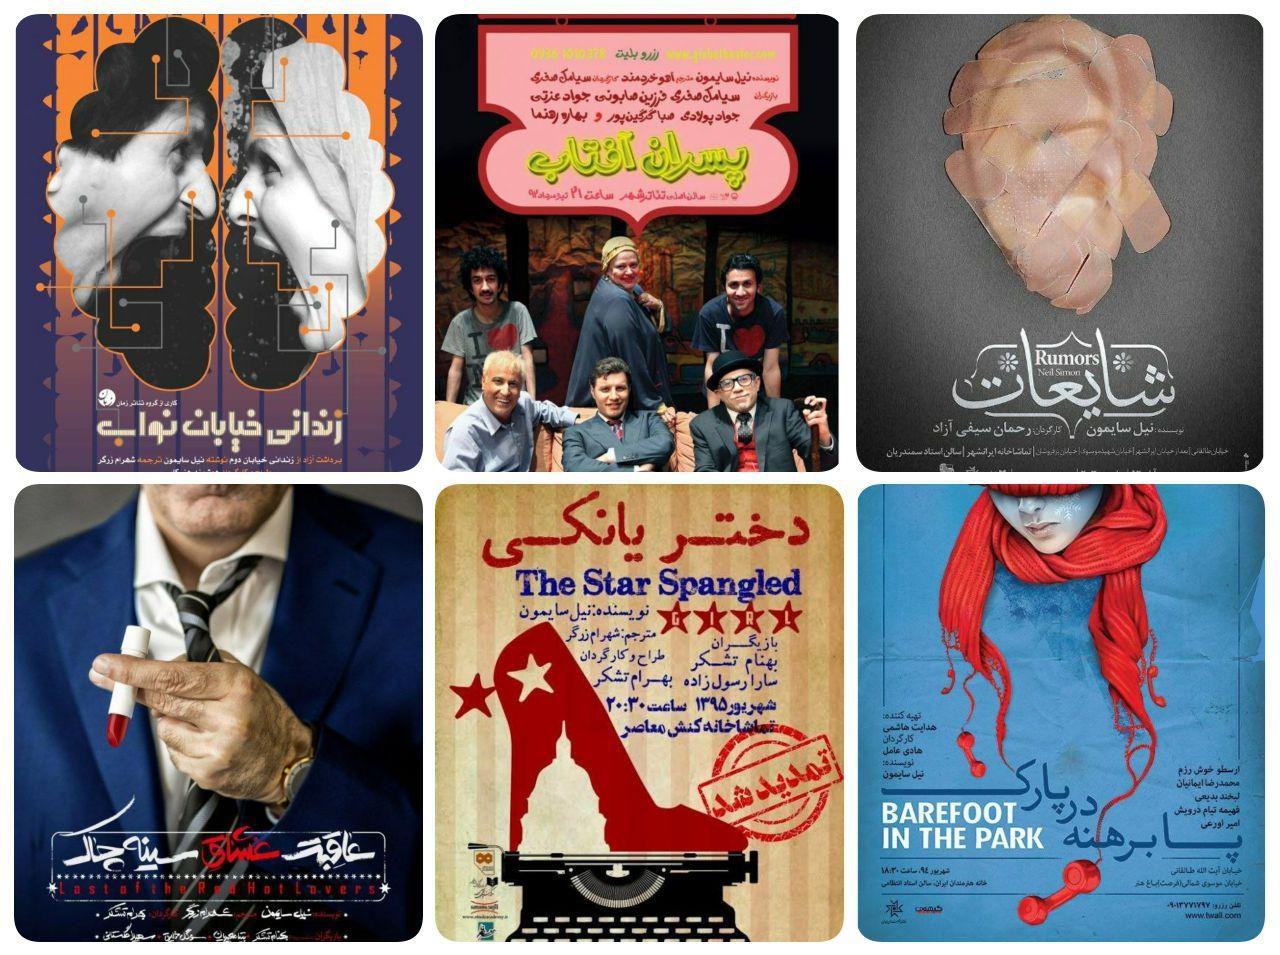 چطور تئاتر ایران روی خوش به سایمون نشان داد؟